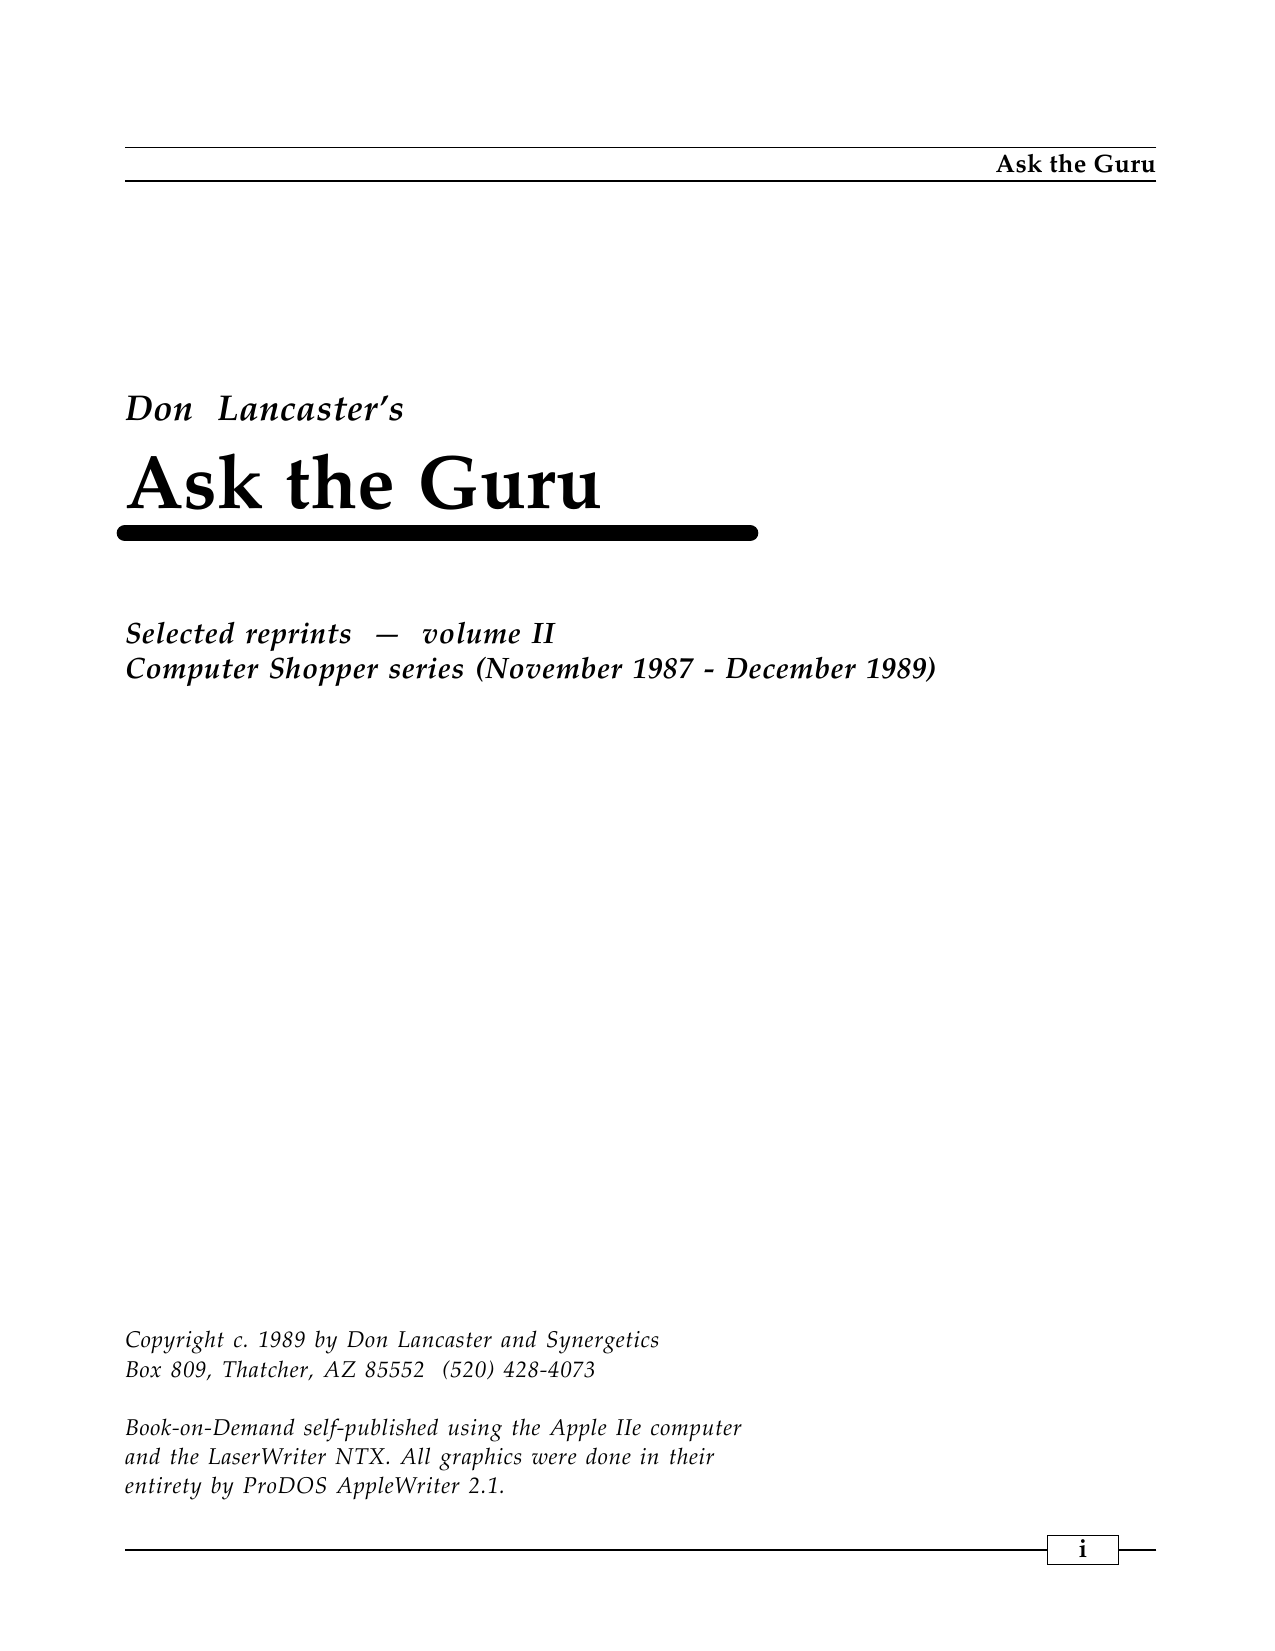 Ask The Guru II | manualzz.com - 